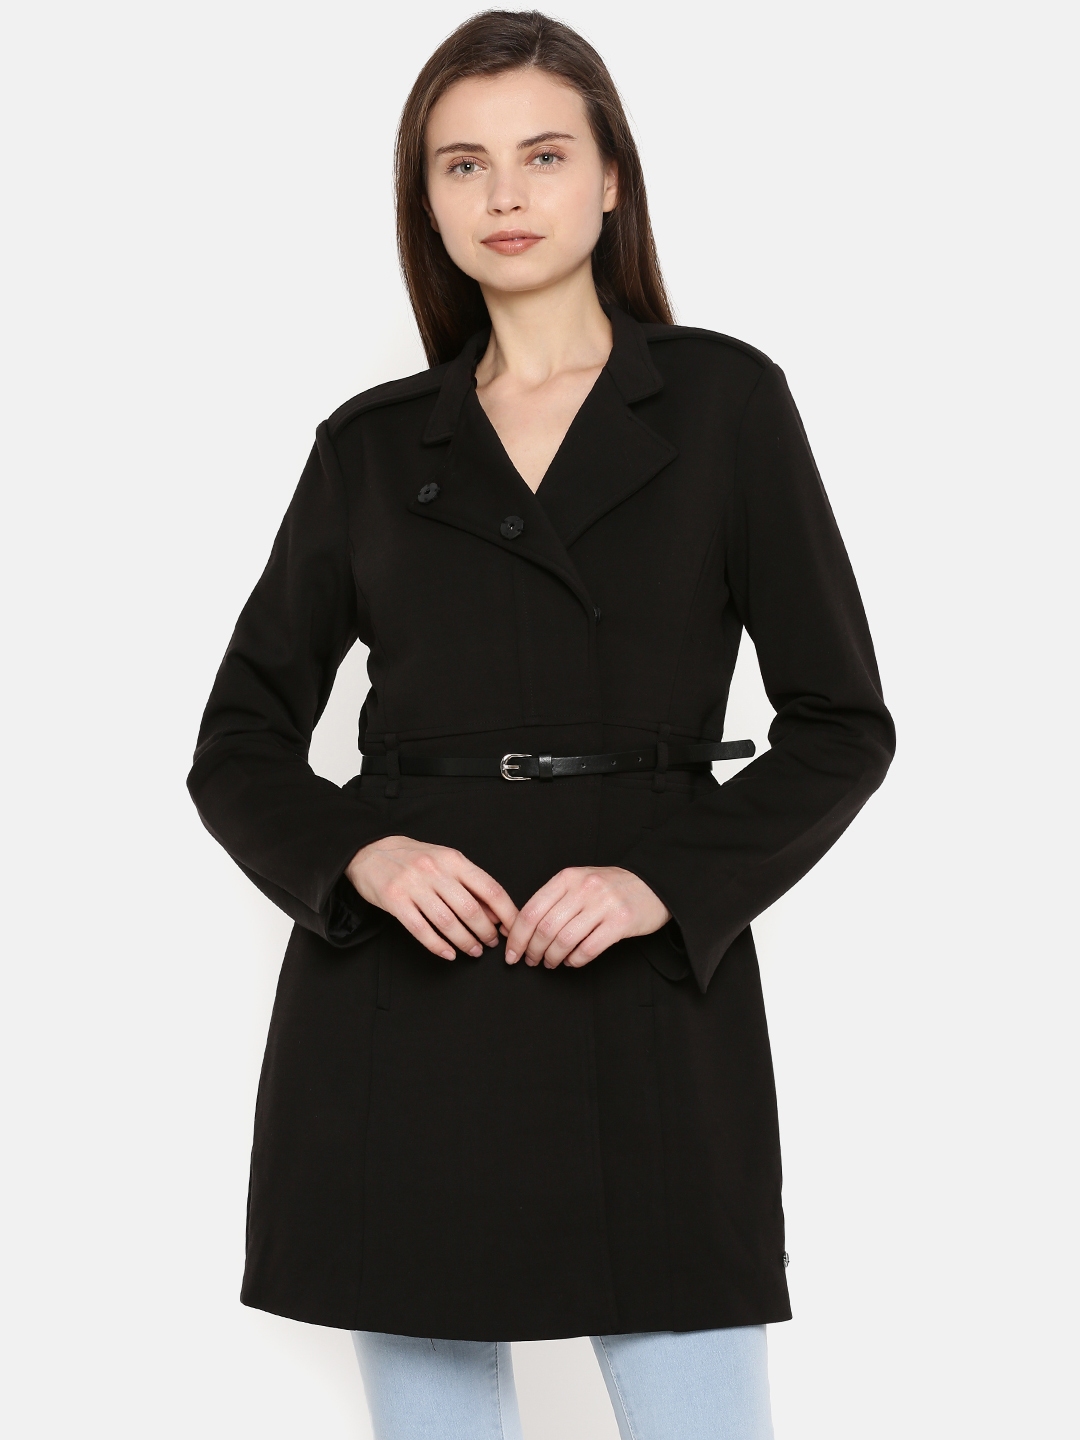 Buy U.S. Polo Assn. Women Women Black Solid Tailored Jacket - Jackets ...